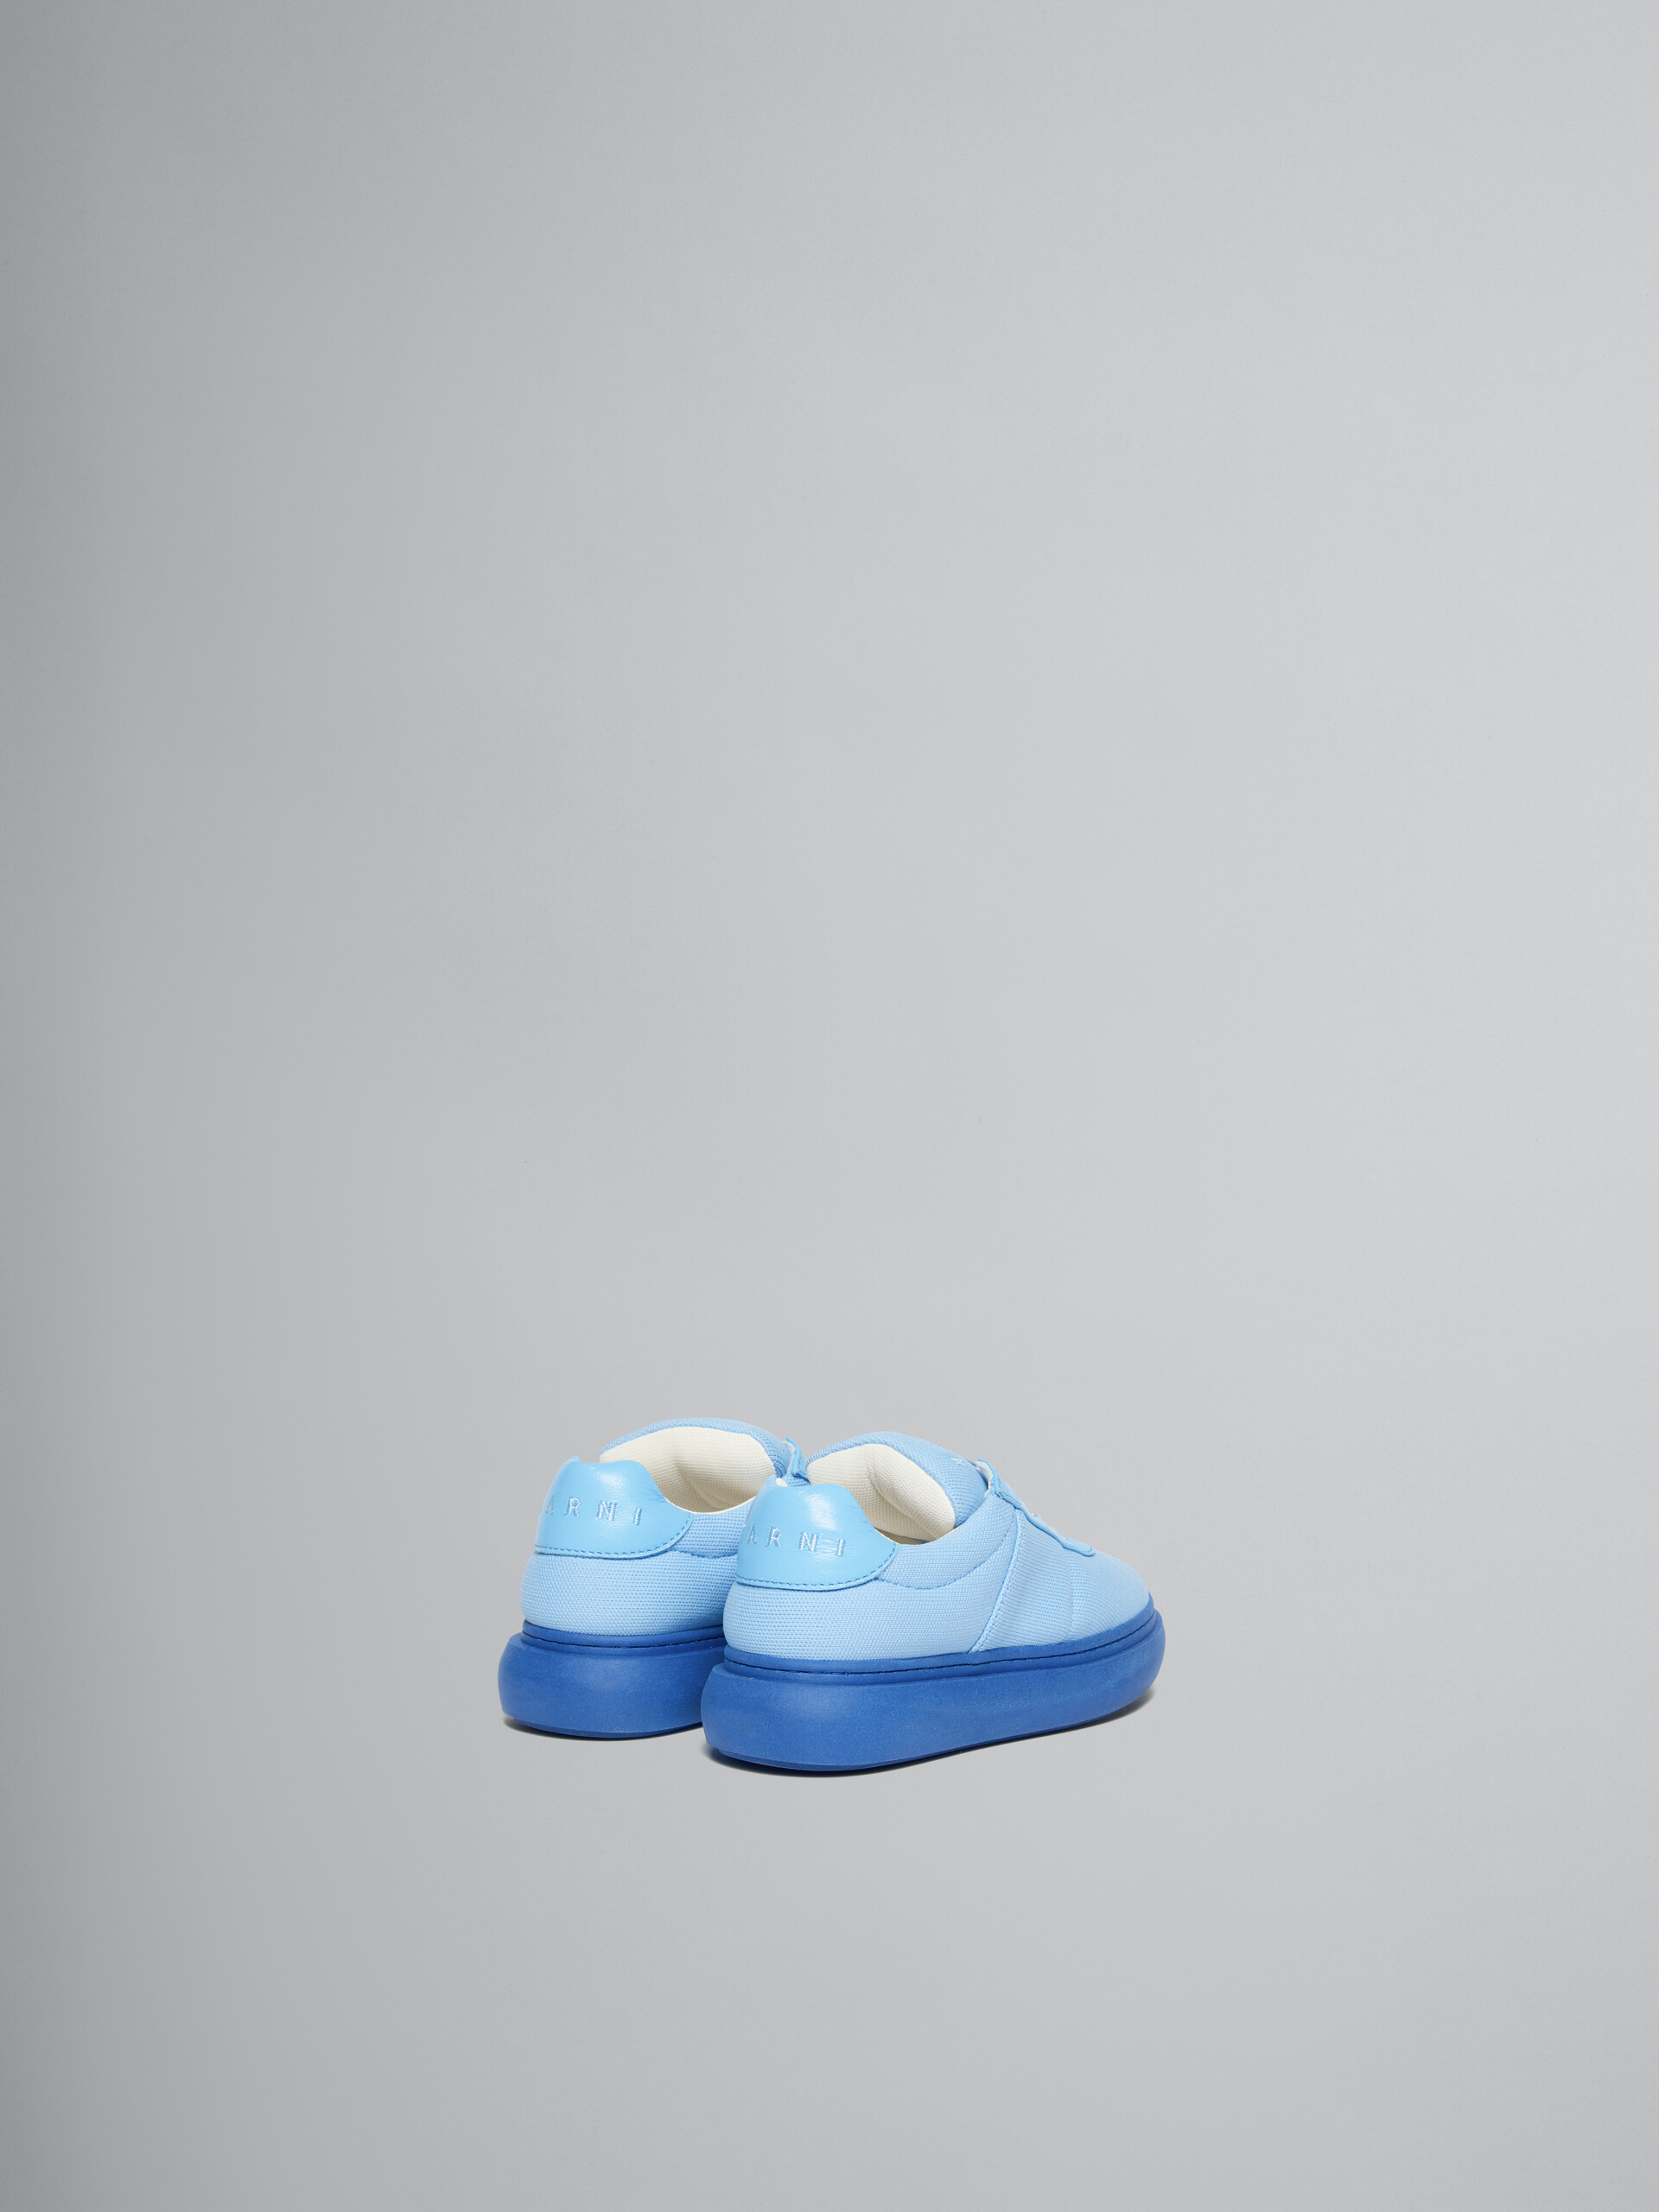 Hellblaue Sneakers aus gepolstertem Leder - KINDER - Image 3